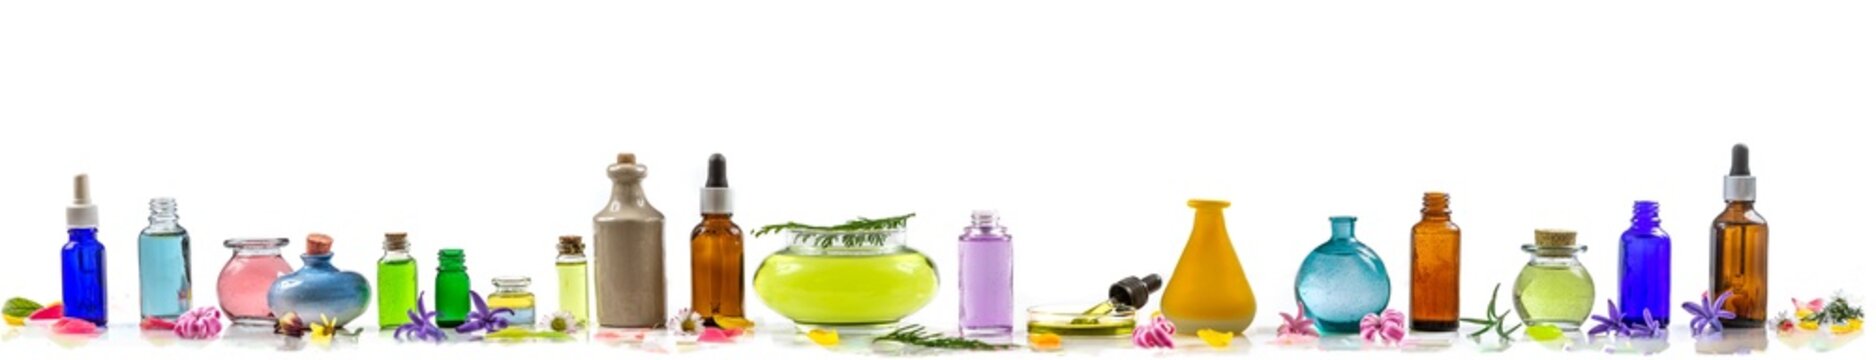 Panoramic of essential oils aligned macerates